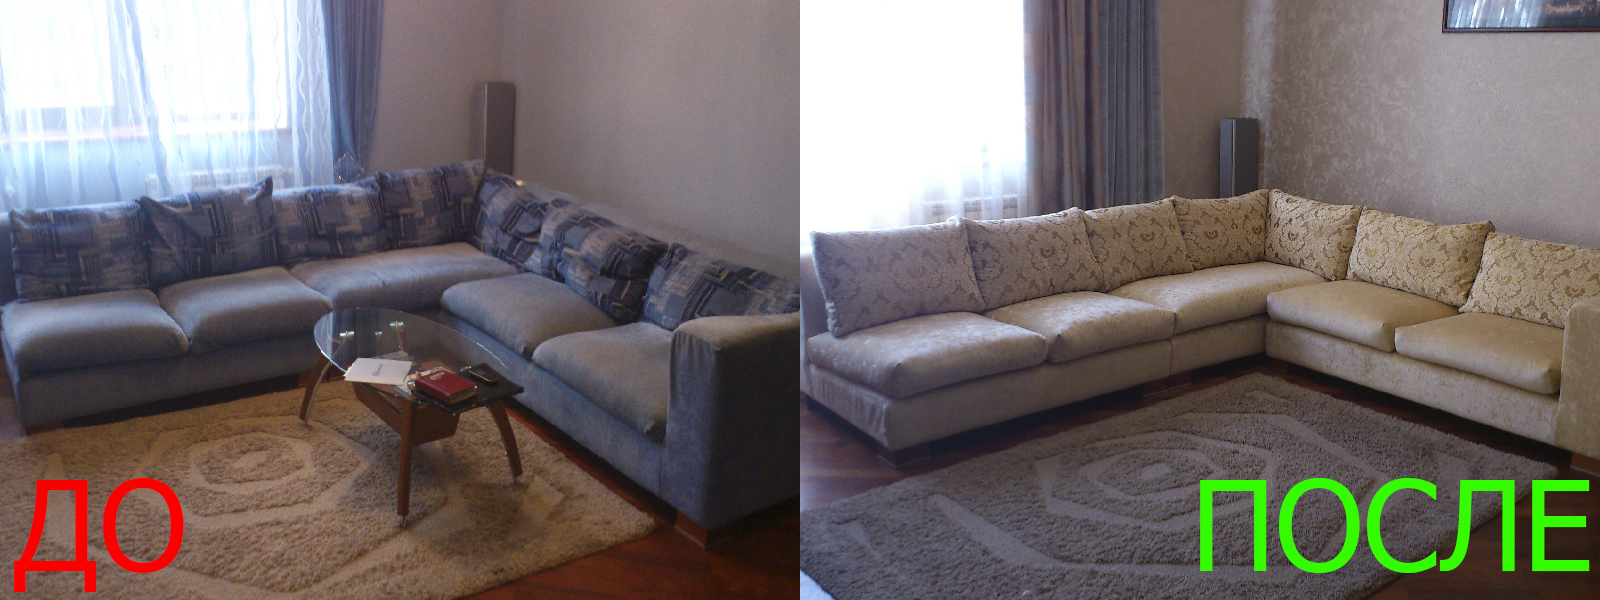 Обтяжка углового дивана в Краснодаре от опытных мастеров компании MebelProfi - 100% гарантия